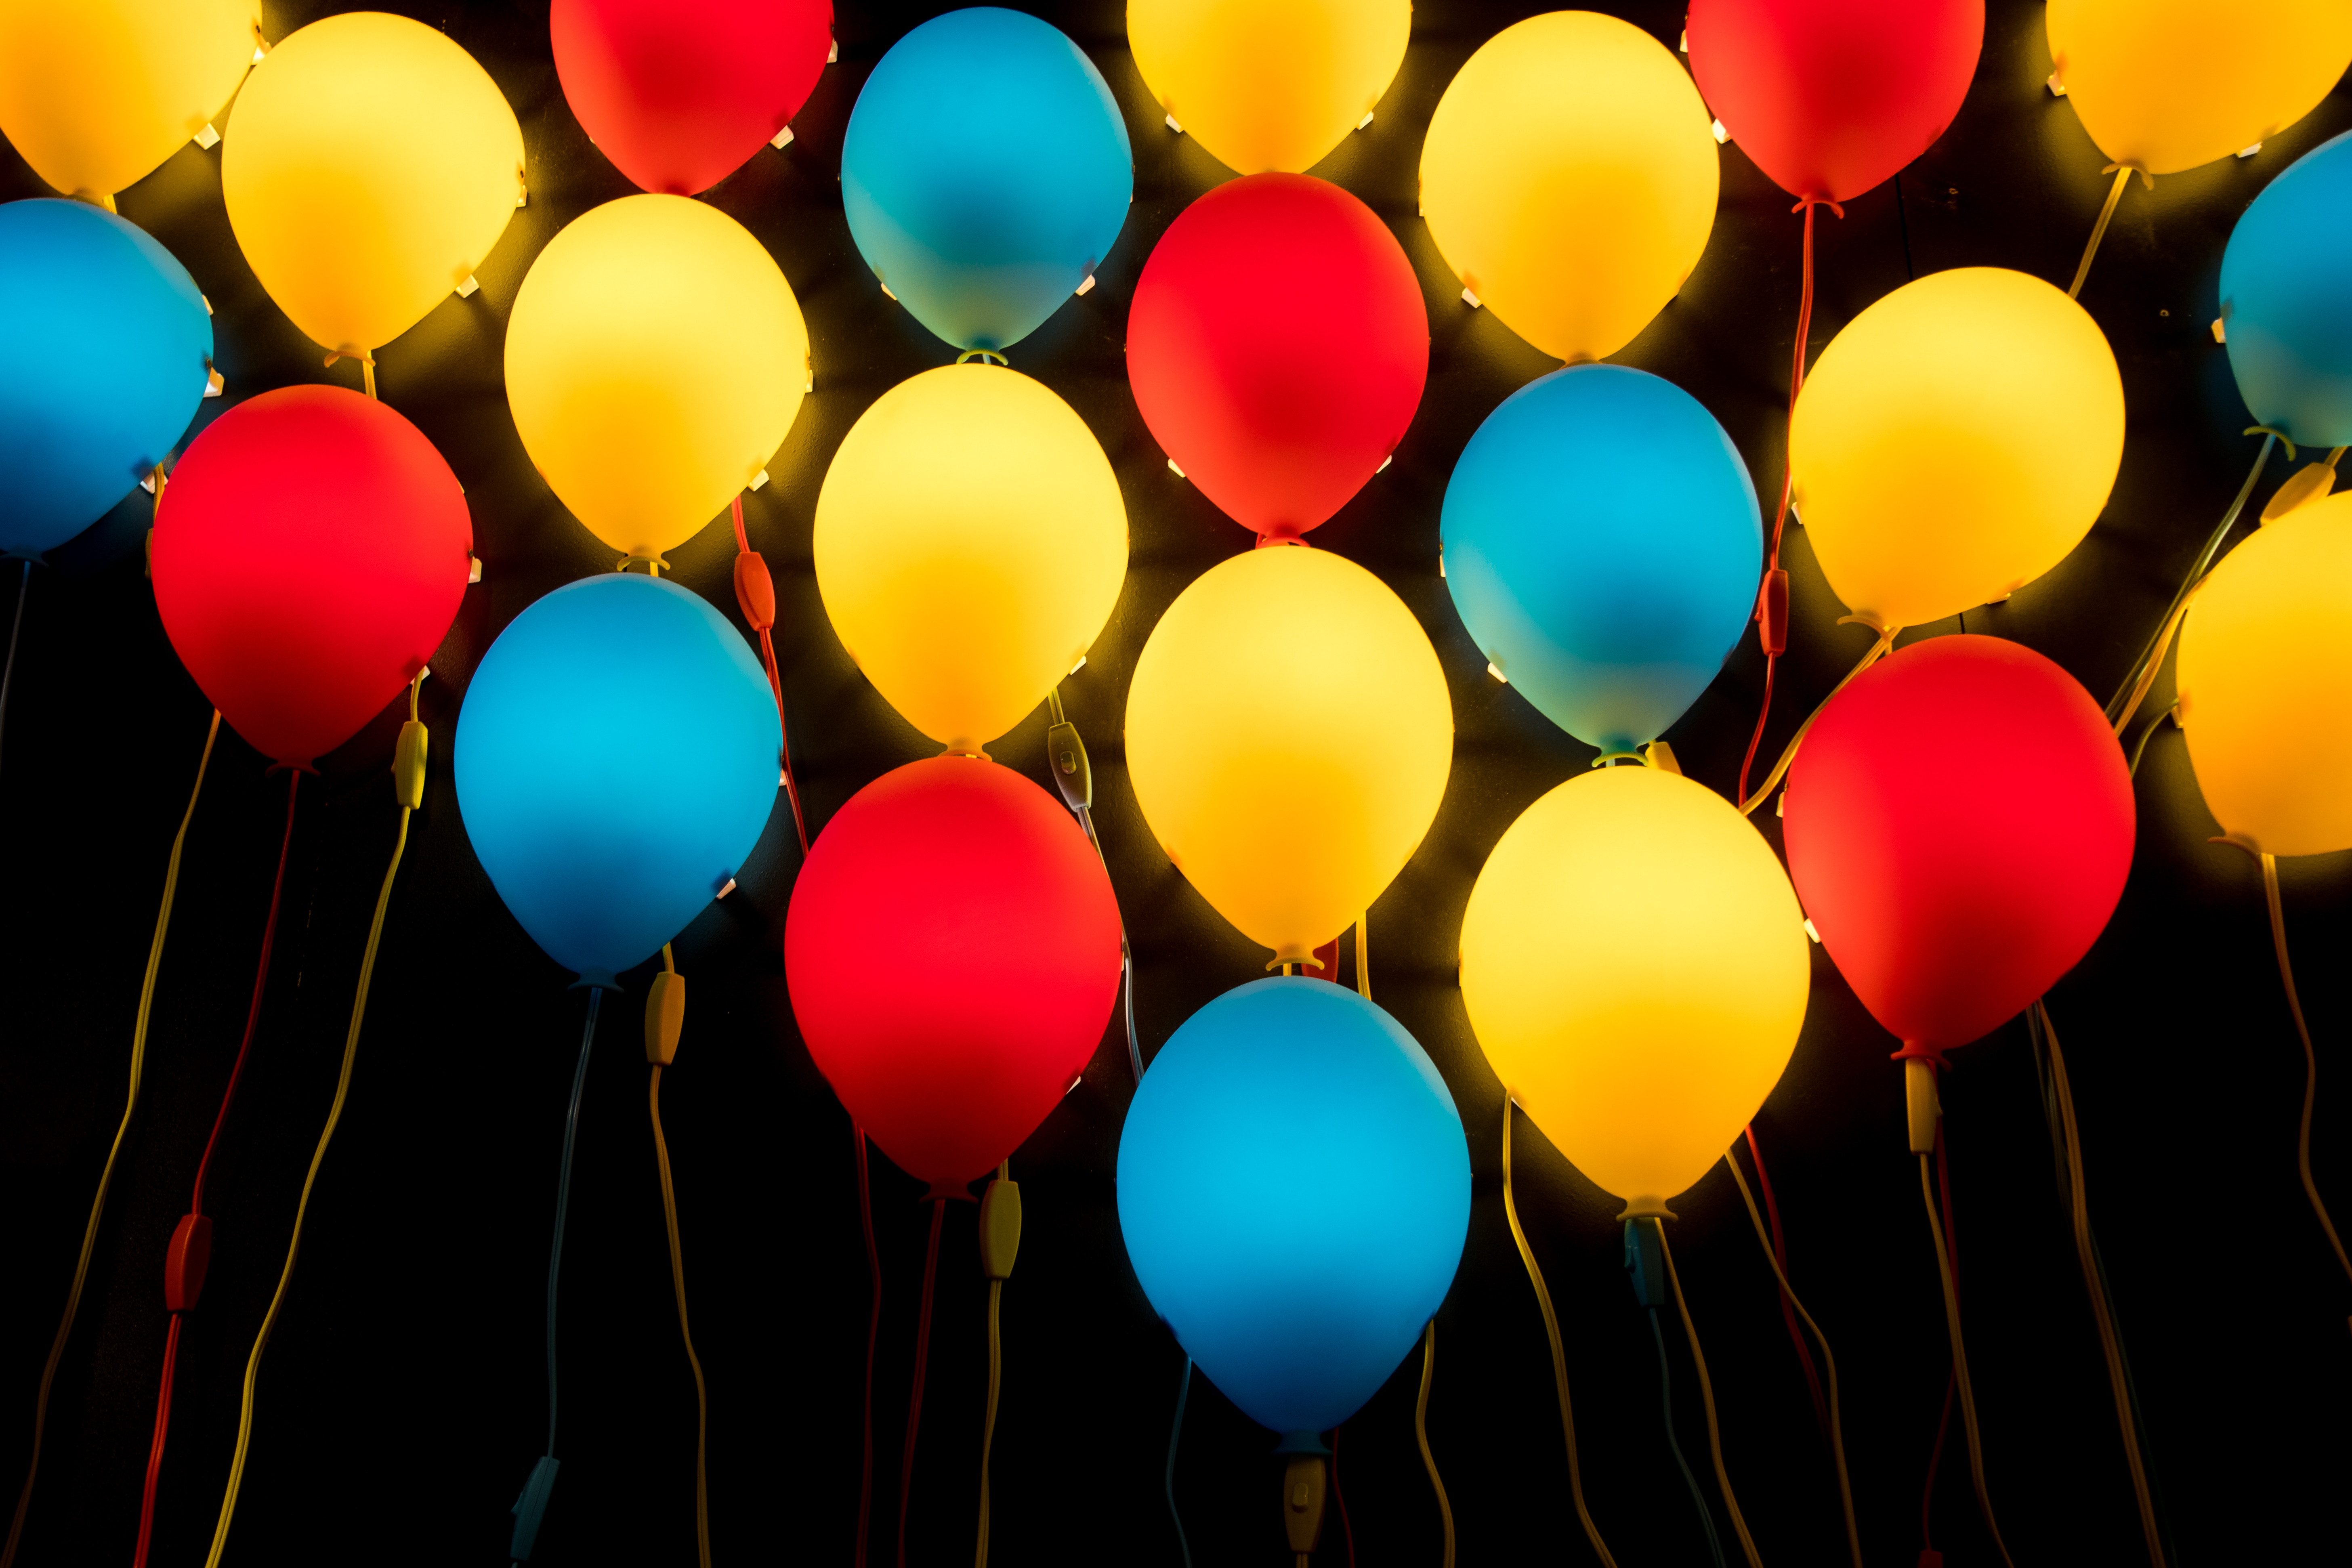 balloons, miscellanea, miscellaneous, multicolored, motley, lamp, lamps, air balloons